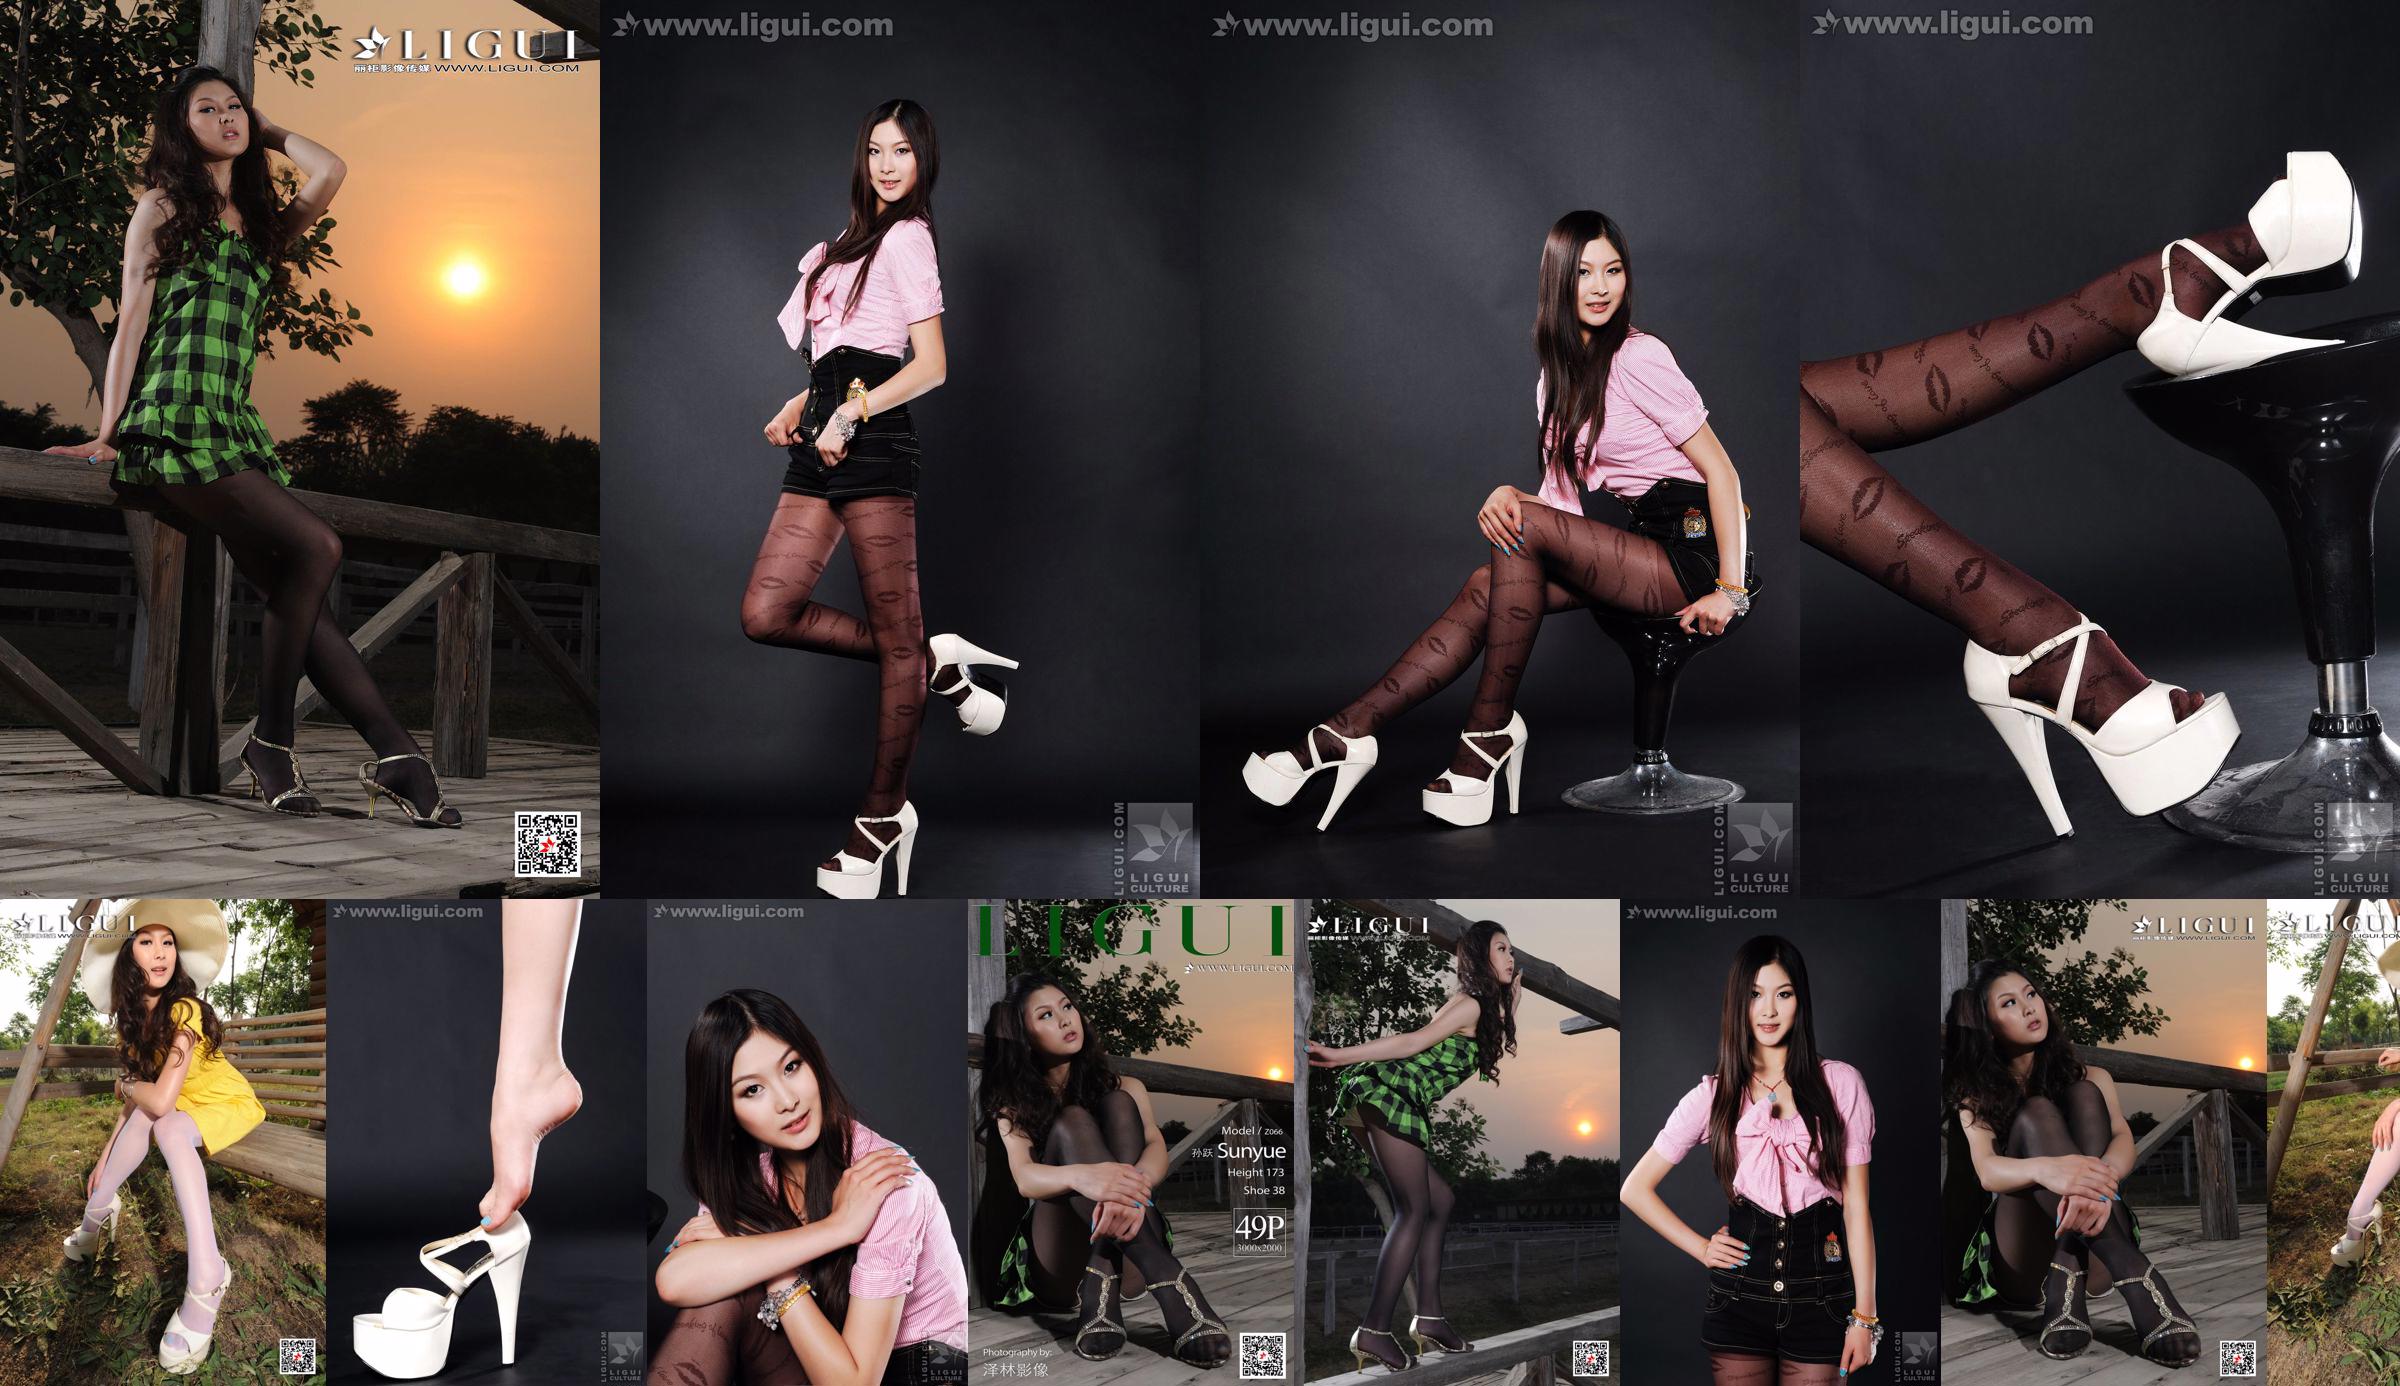 นางแบบ Sun Yue "Sexy and Glamorous Stockings" [丽柜 LiGui] รูปถ่ายขาสวยและเท้าหยก No.ed99e7 หน้า 5